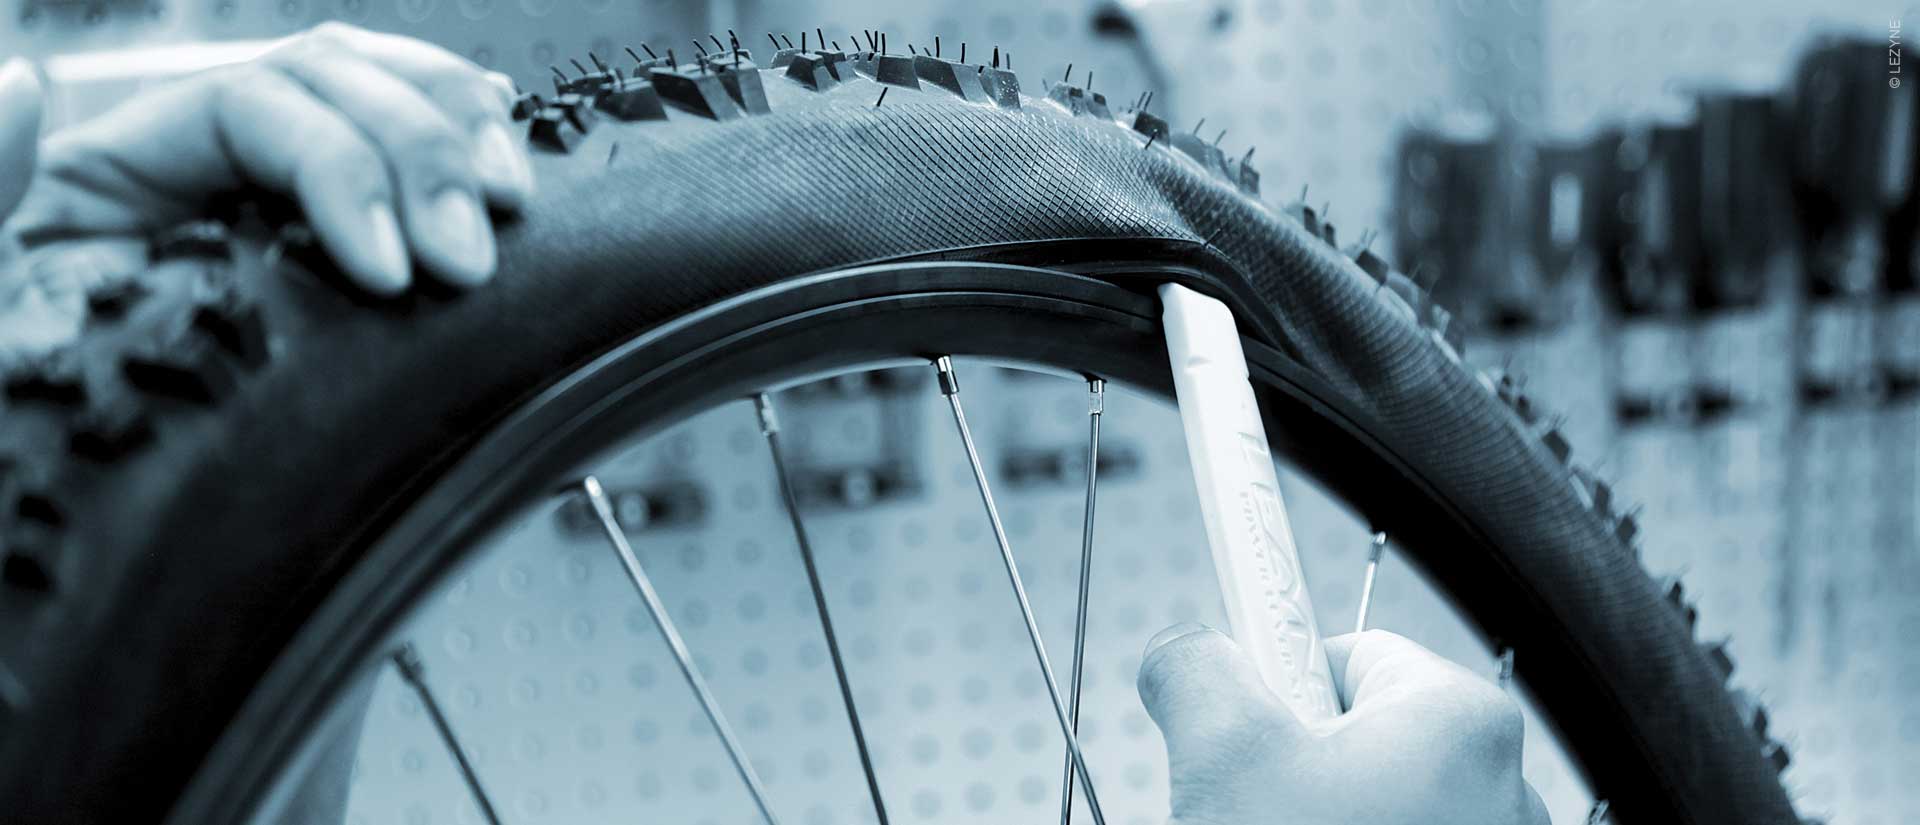 Manual de reparación de bicicletas